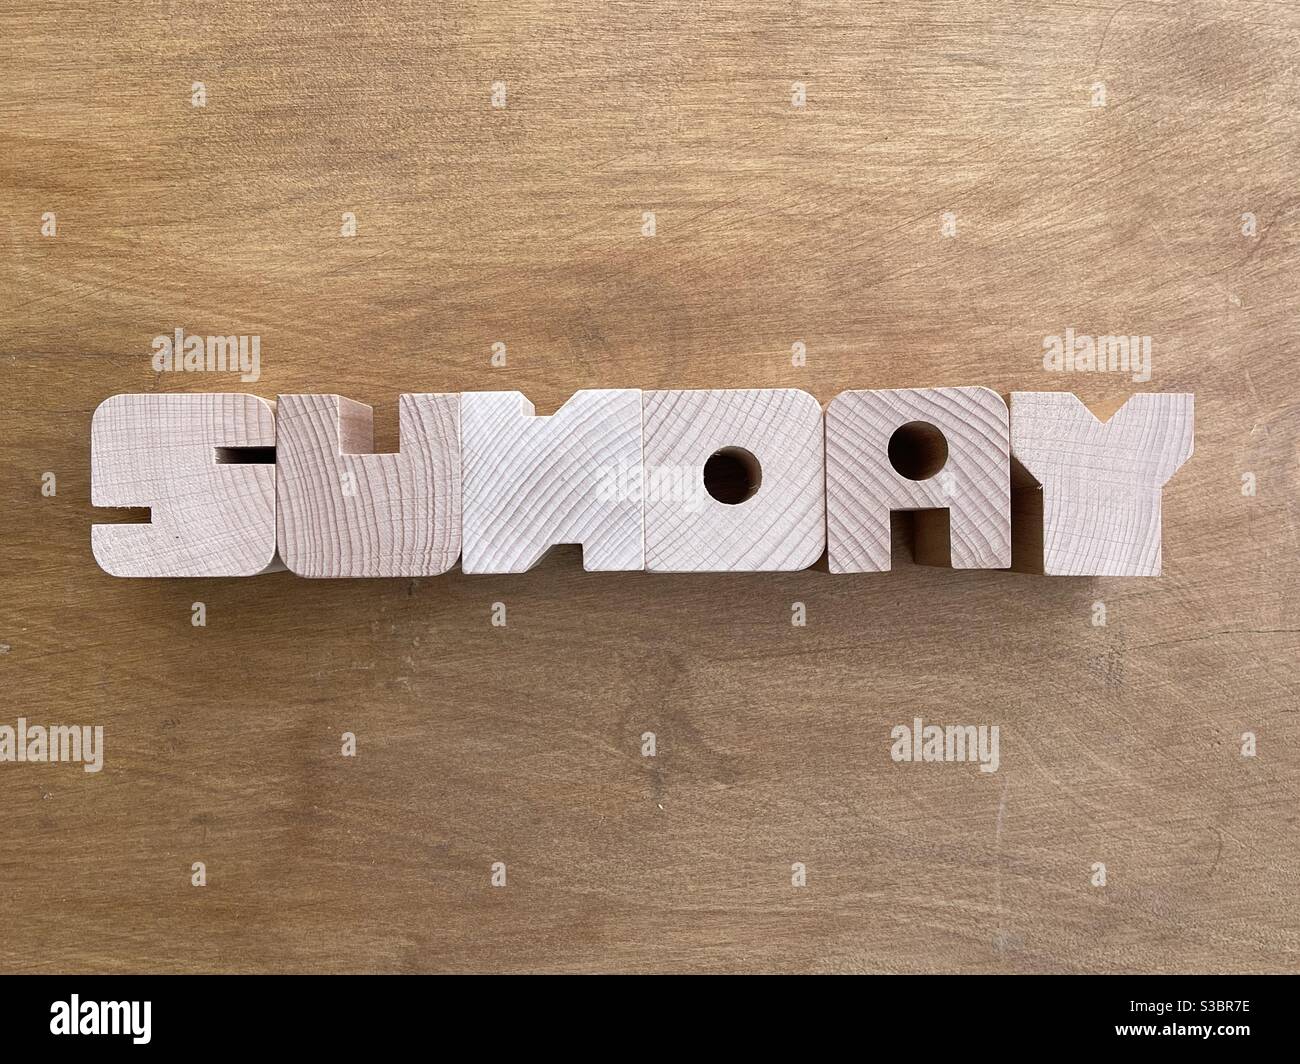 Testo domenicale composto da lettere in legno su tavola di legno Foto Stock